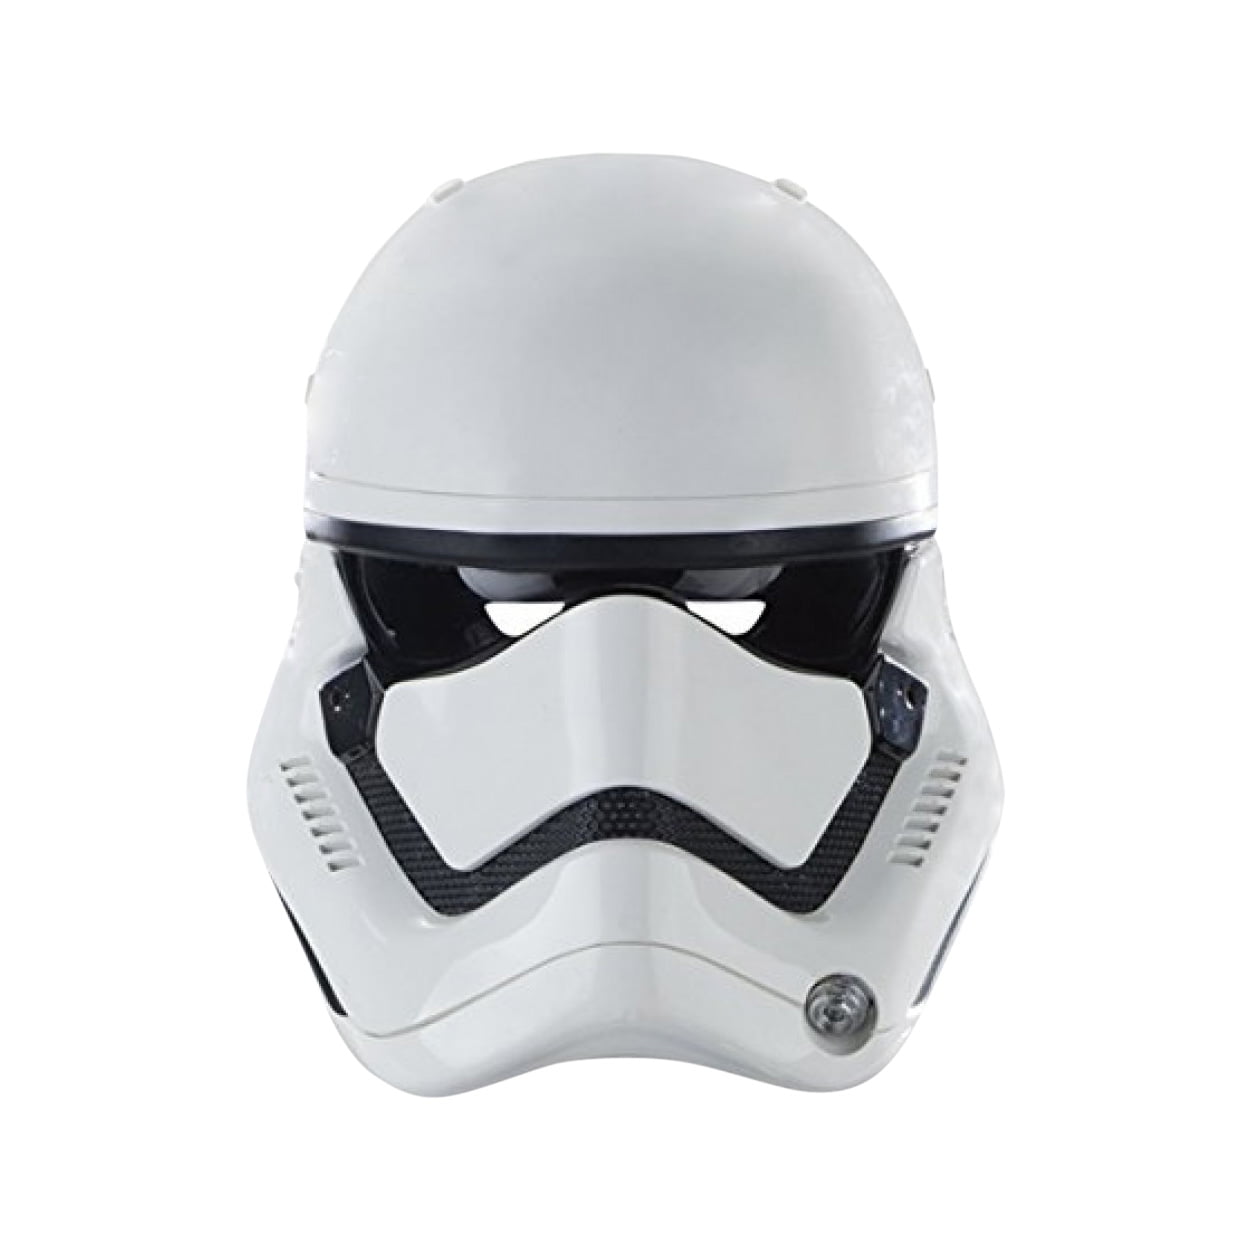 Cosplay Star Wars Helmet The Force Awakens Stormtrooper Helmet Handmade Black 